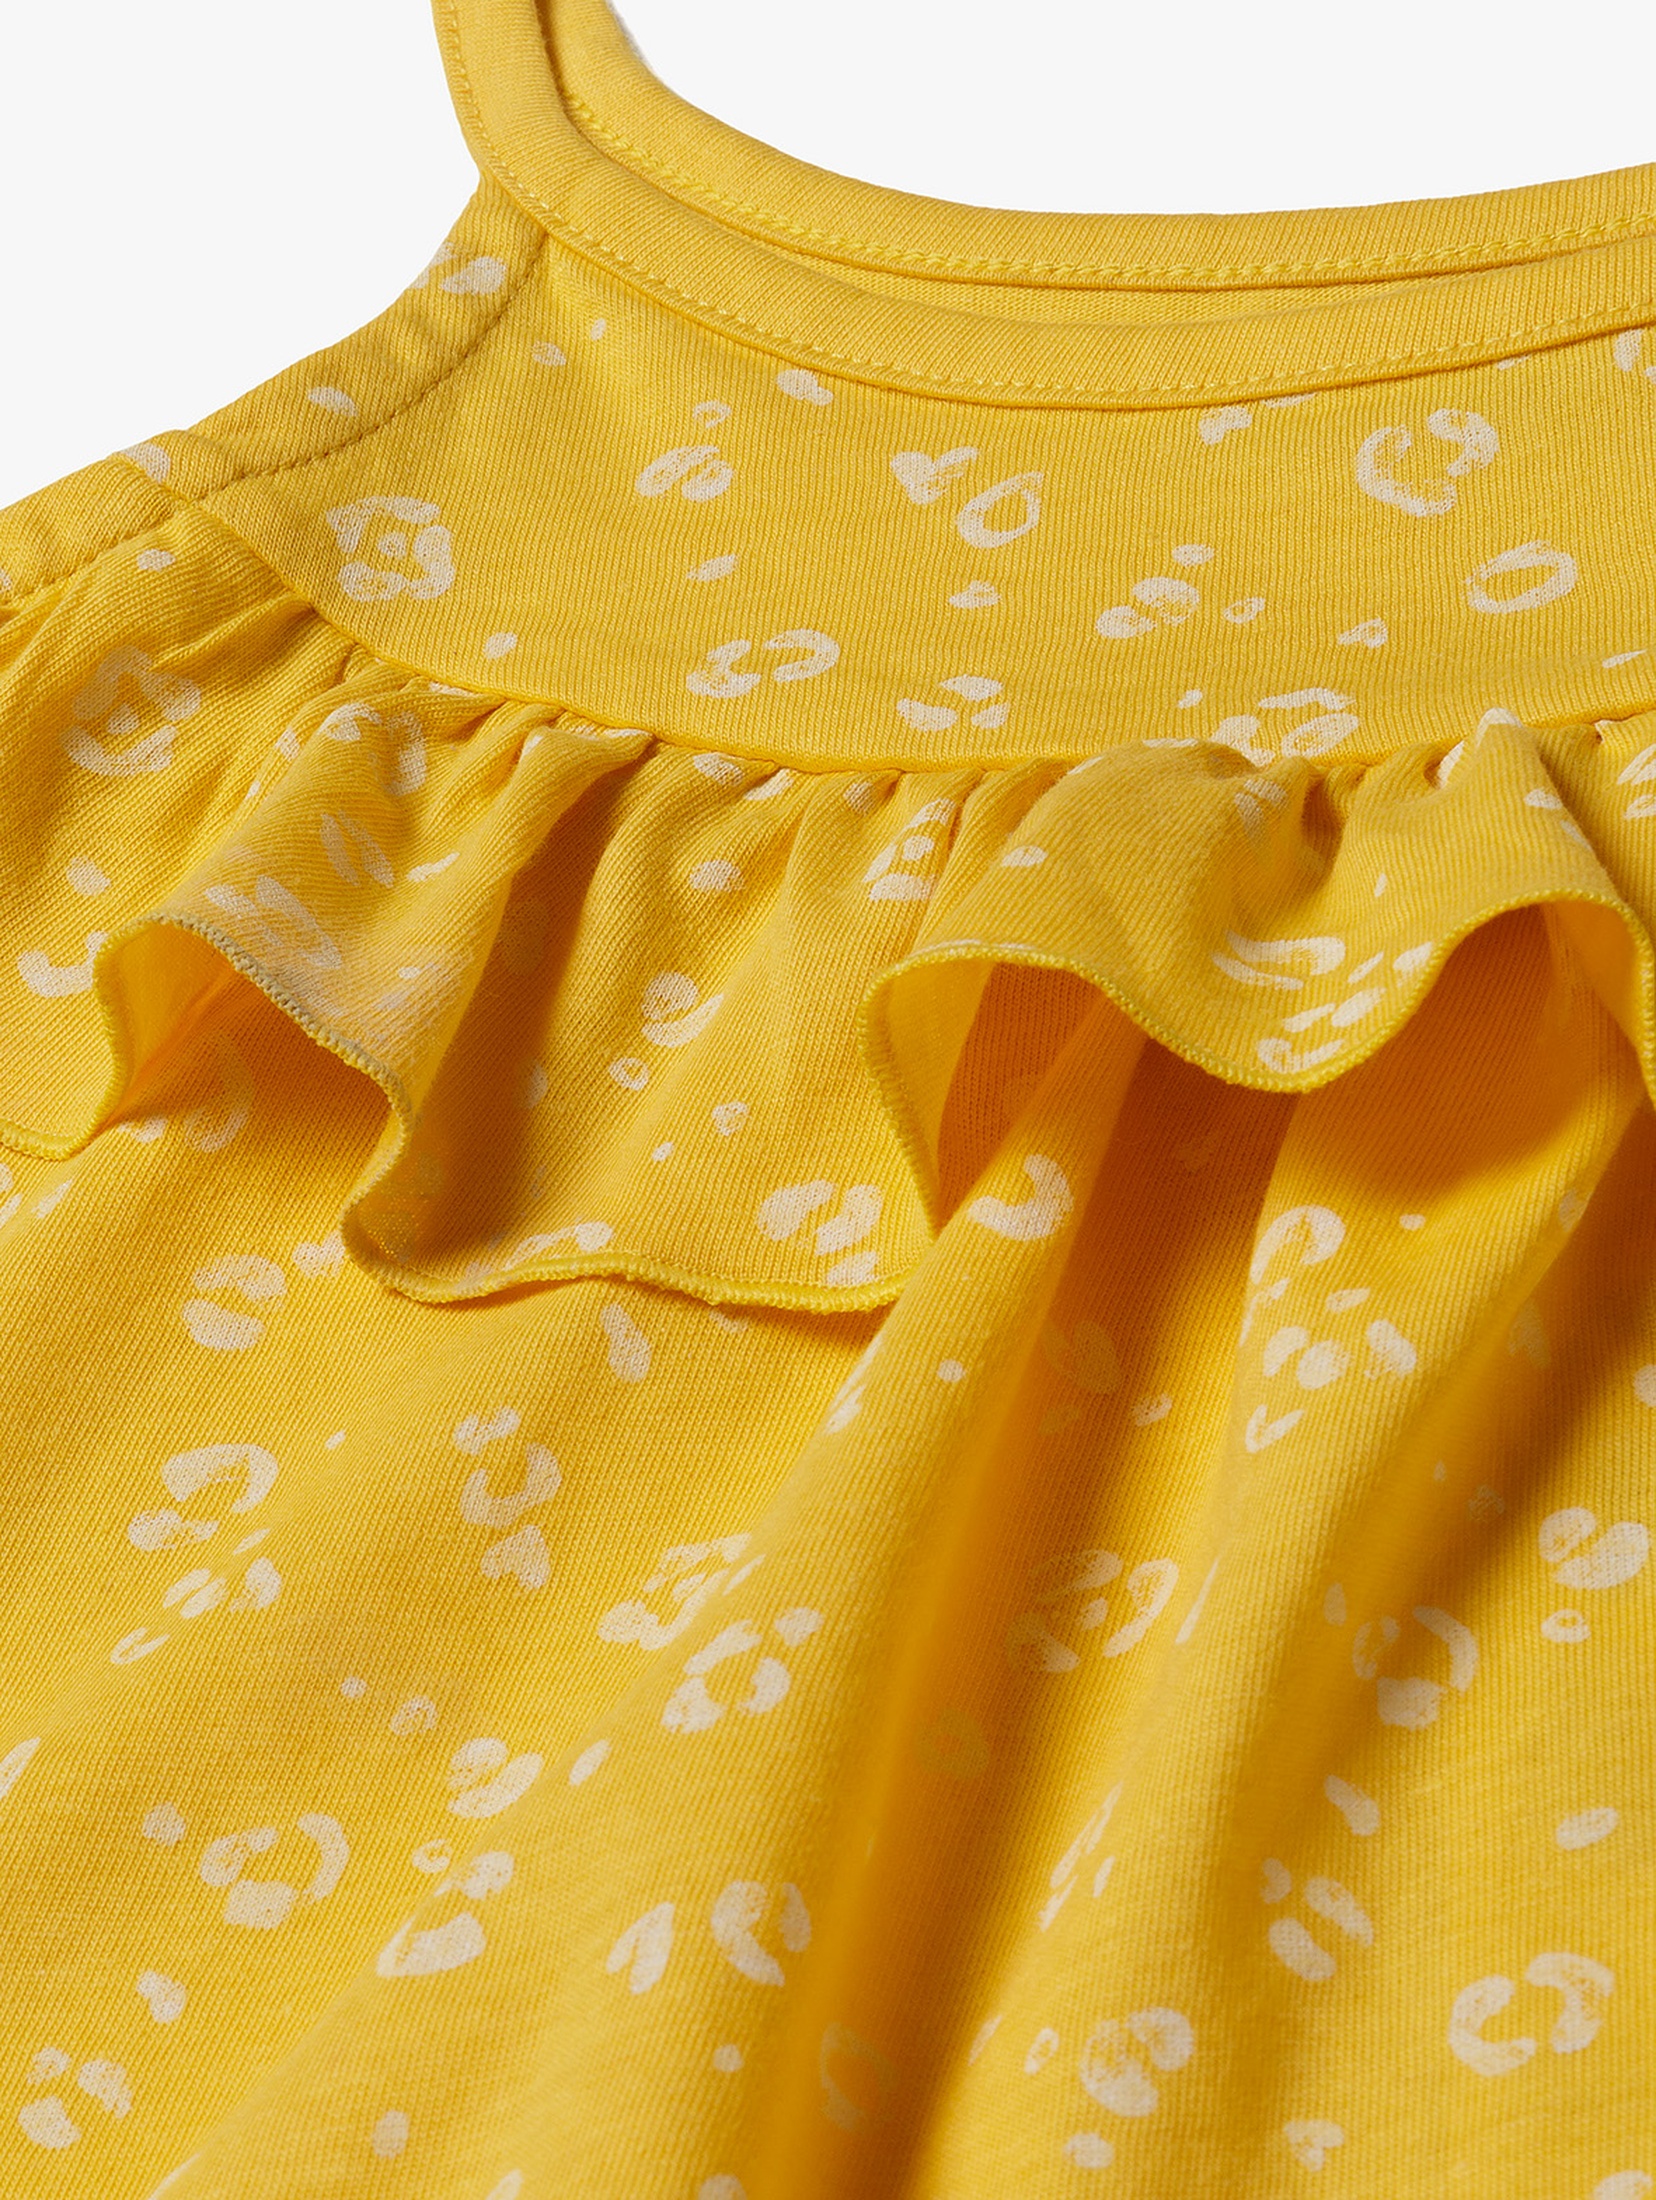 Letnia żółta sukienka dla dziewczynki w drobne kwiaty